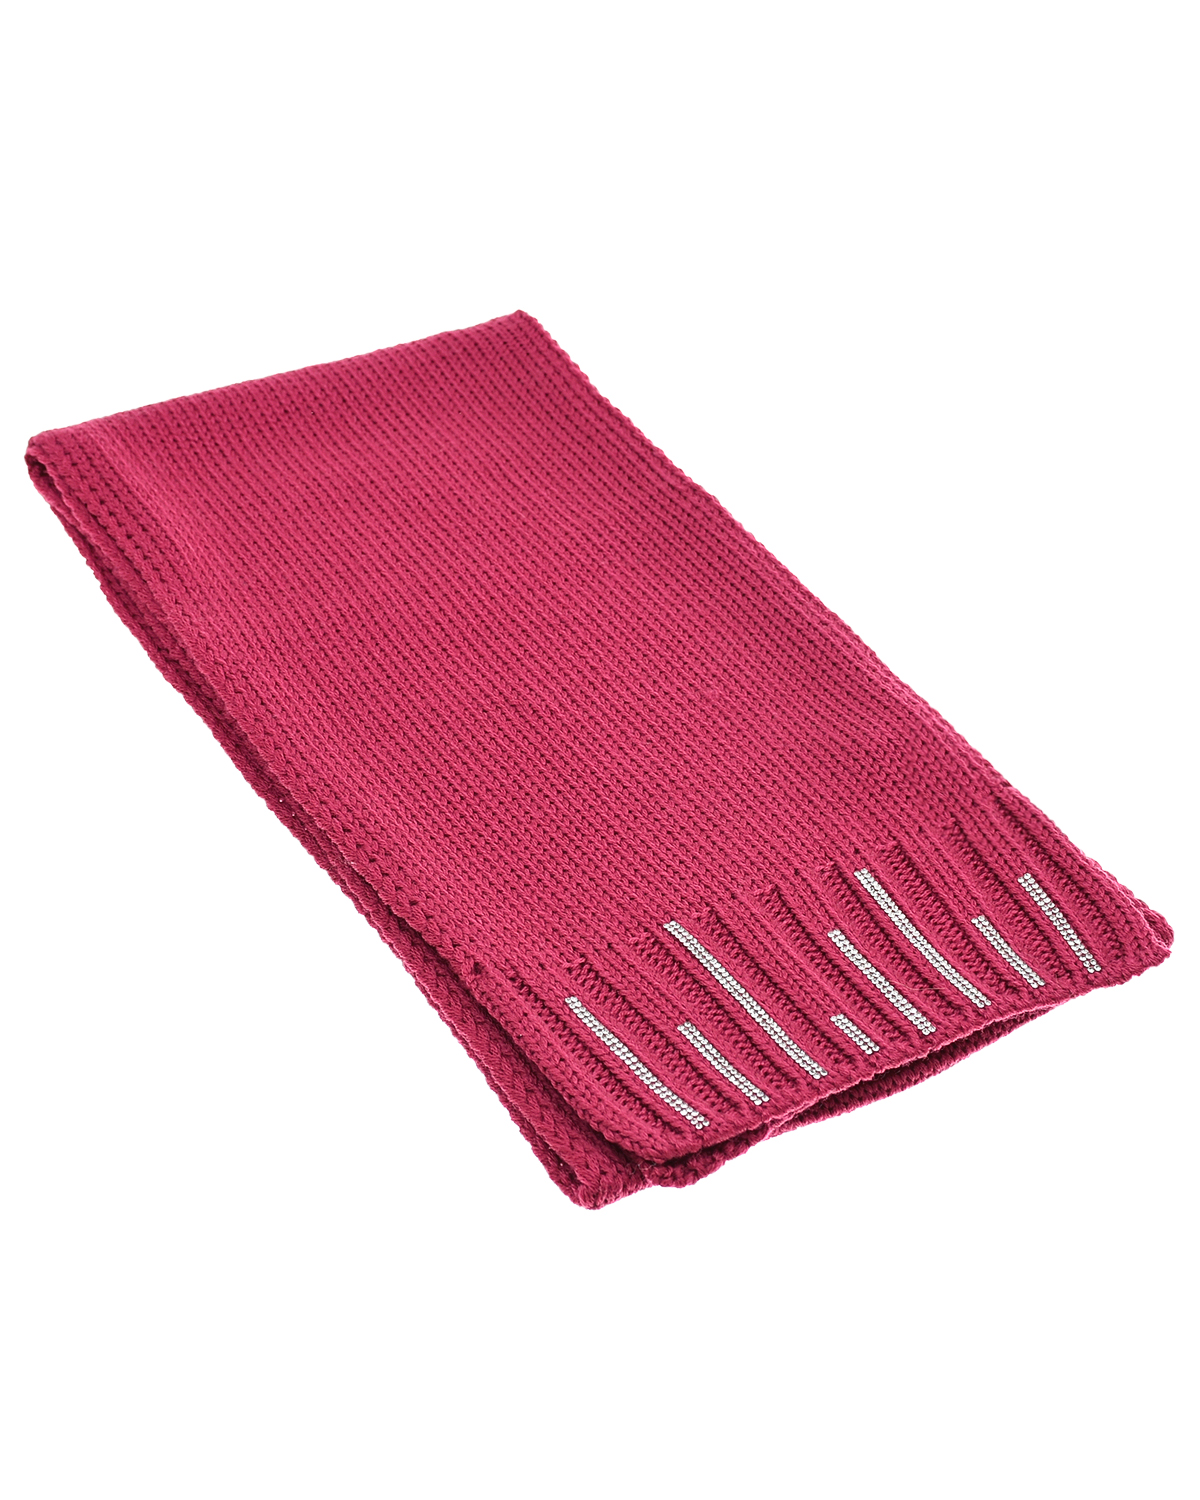 Шерстяной шарф со стразами Joli Bebe детский, размер unica, цвет розовый - фото 1